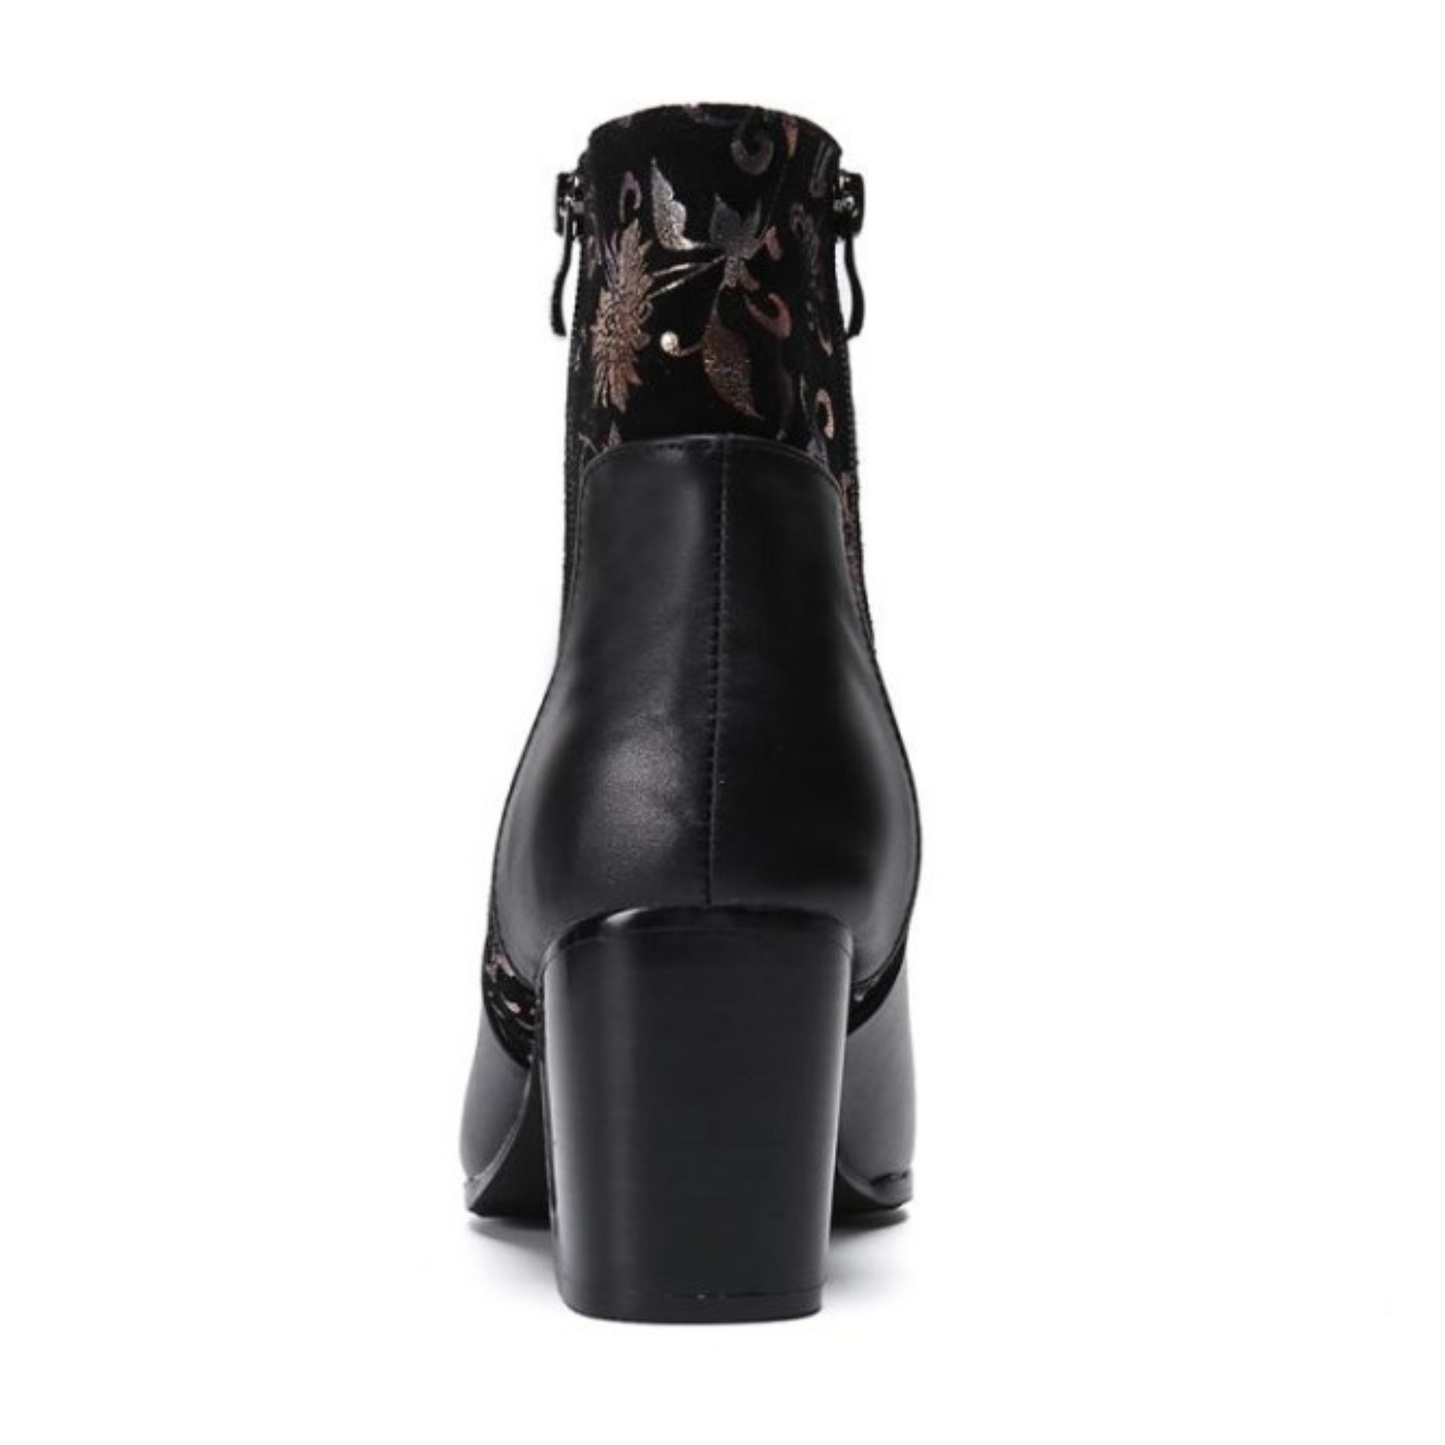 leather chelsea heel boots EN229